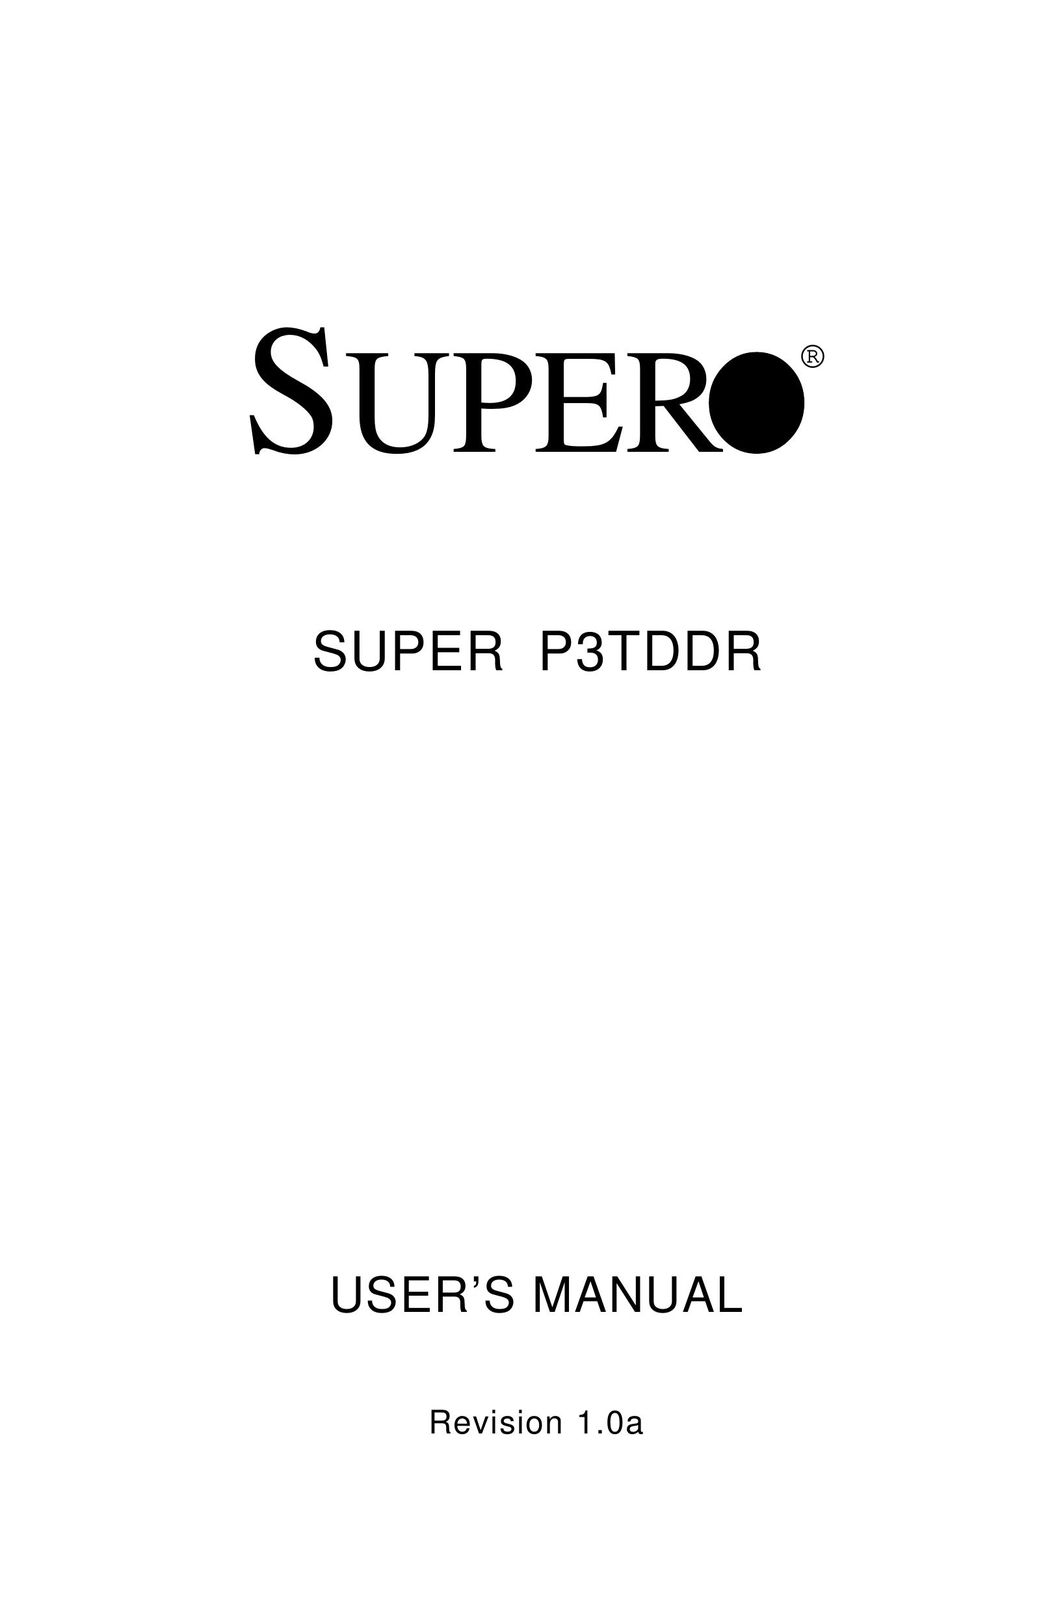 SUPER MICRO Computer SUPER Computer Hardware User Manual